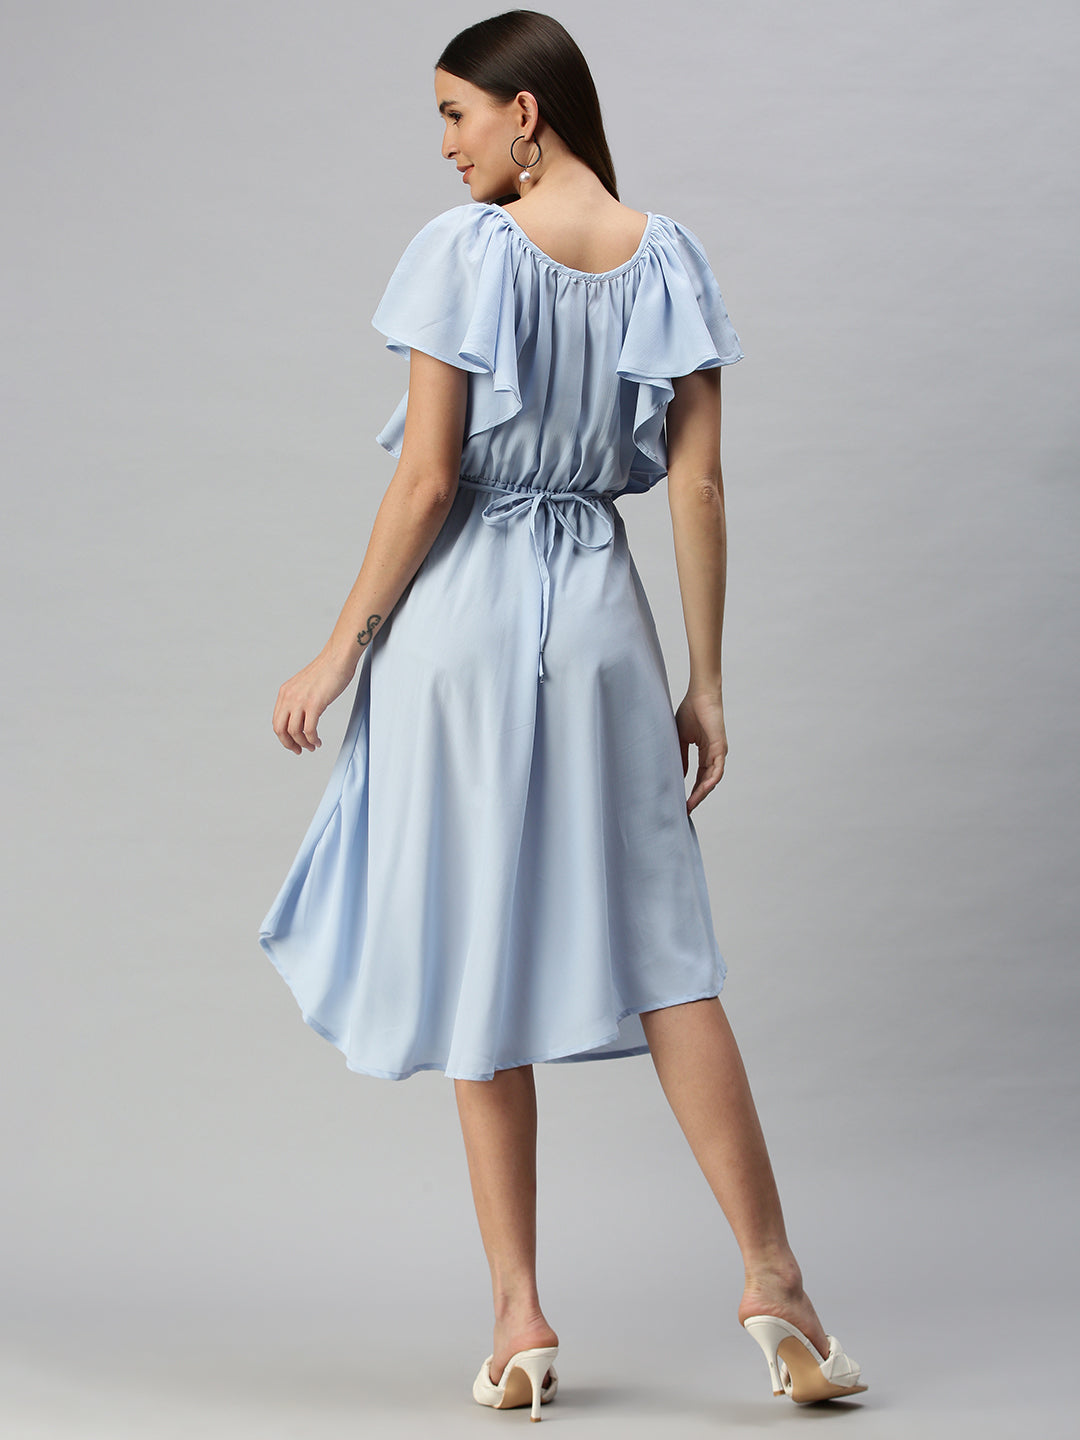 Women's A-Line Blue Dress